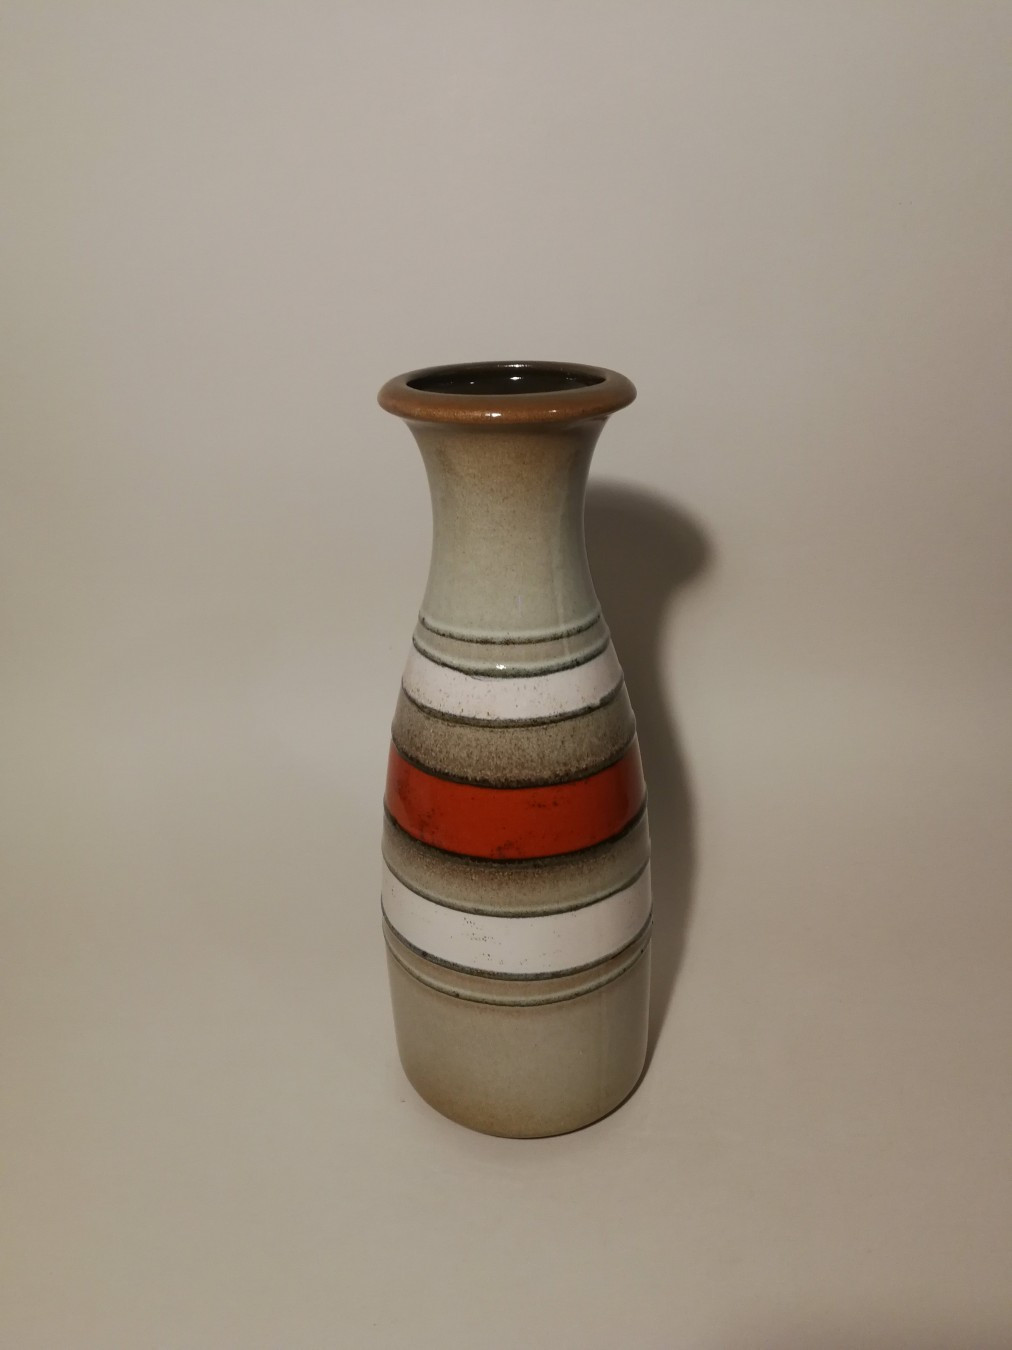 19 Fabulous Scheurich Keramik Vase 2024 free download scheurich keramik vase of scheurich keramik 293 30 keramiac28dka vaza kupindo com 45474513 within scheurich keramik 293 30 keramiac28dka vaza